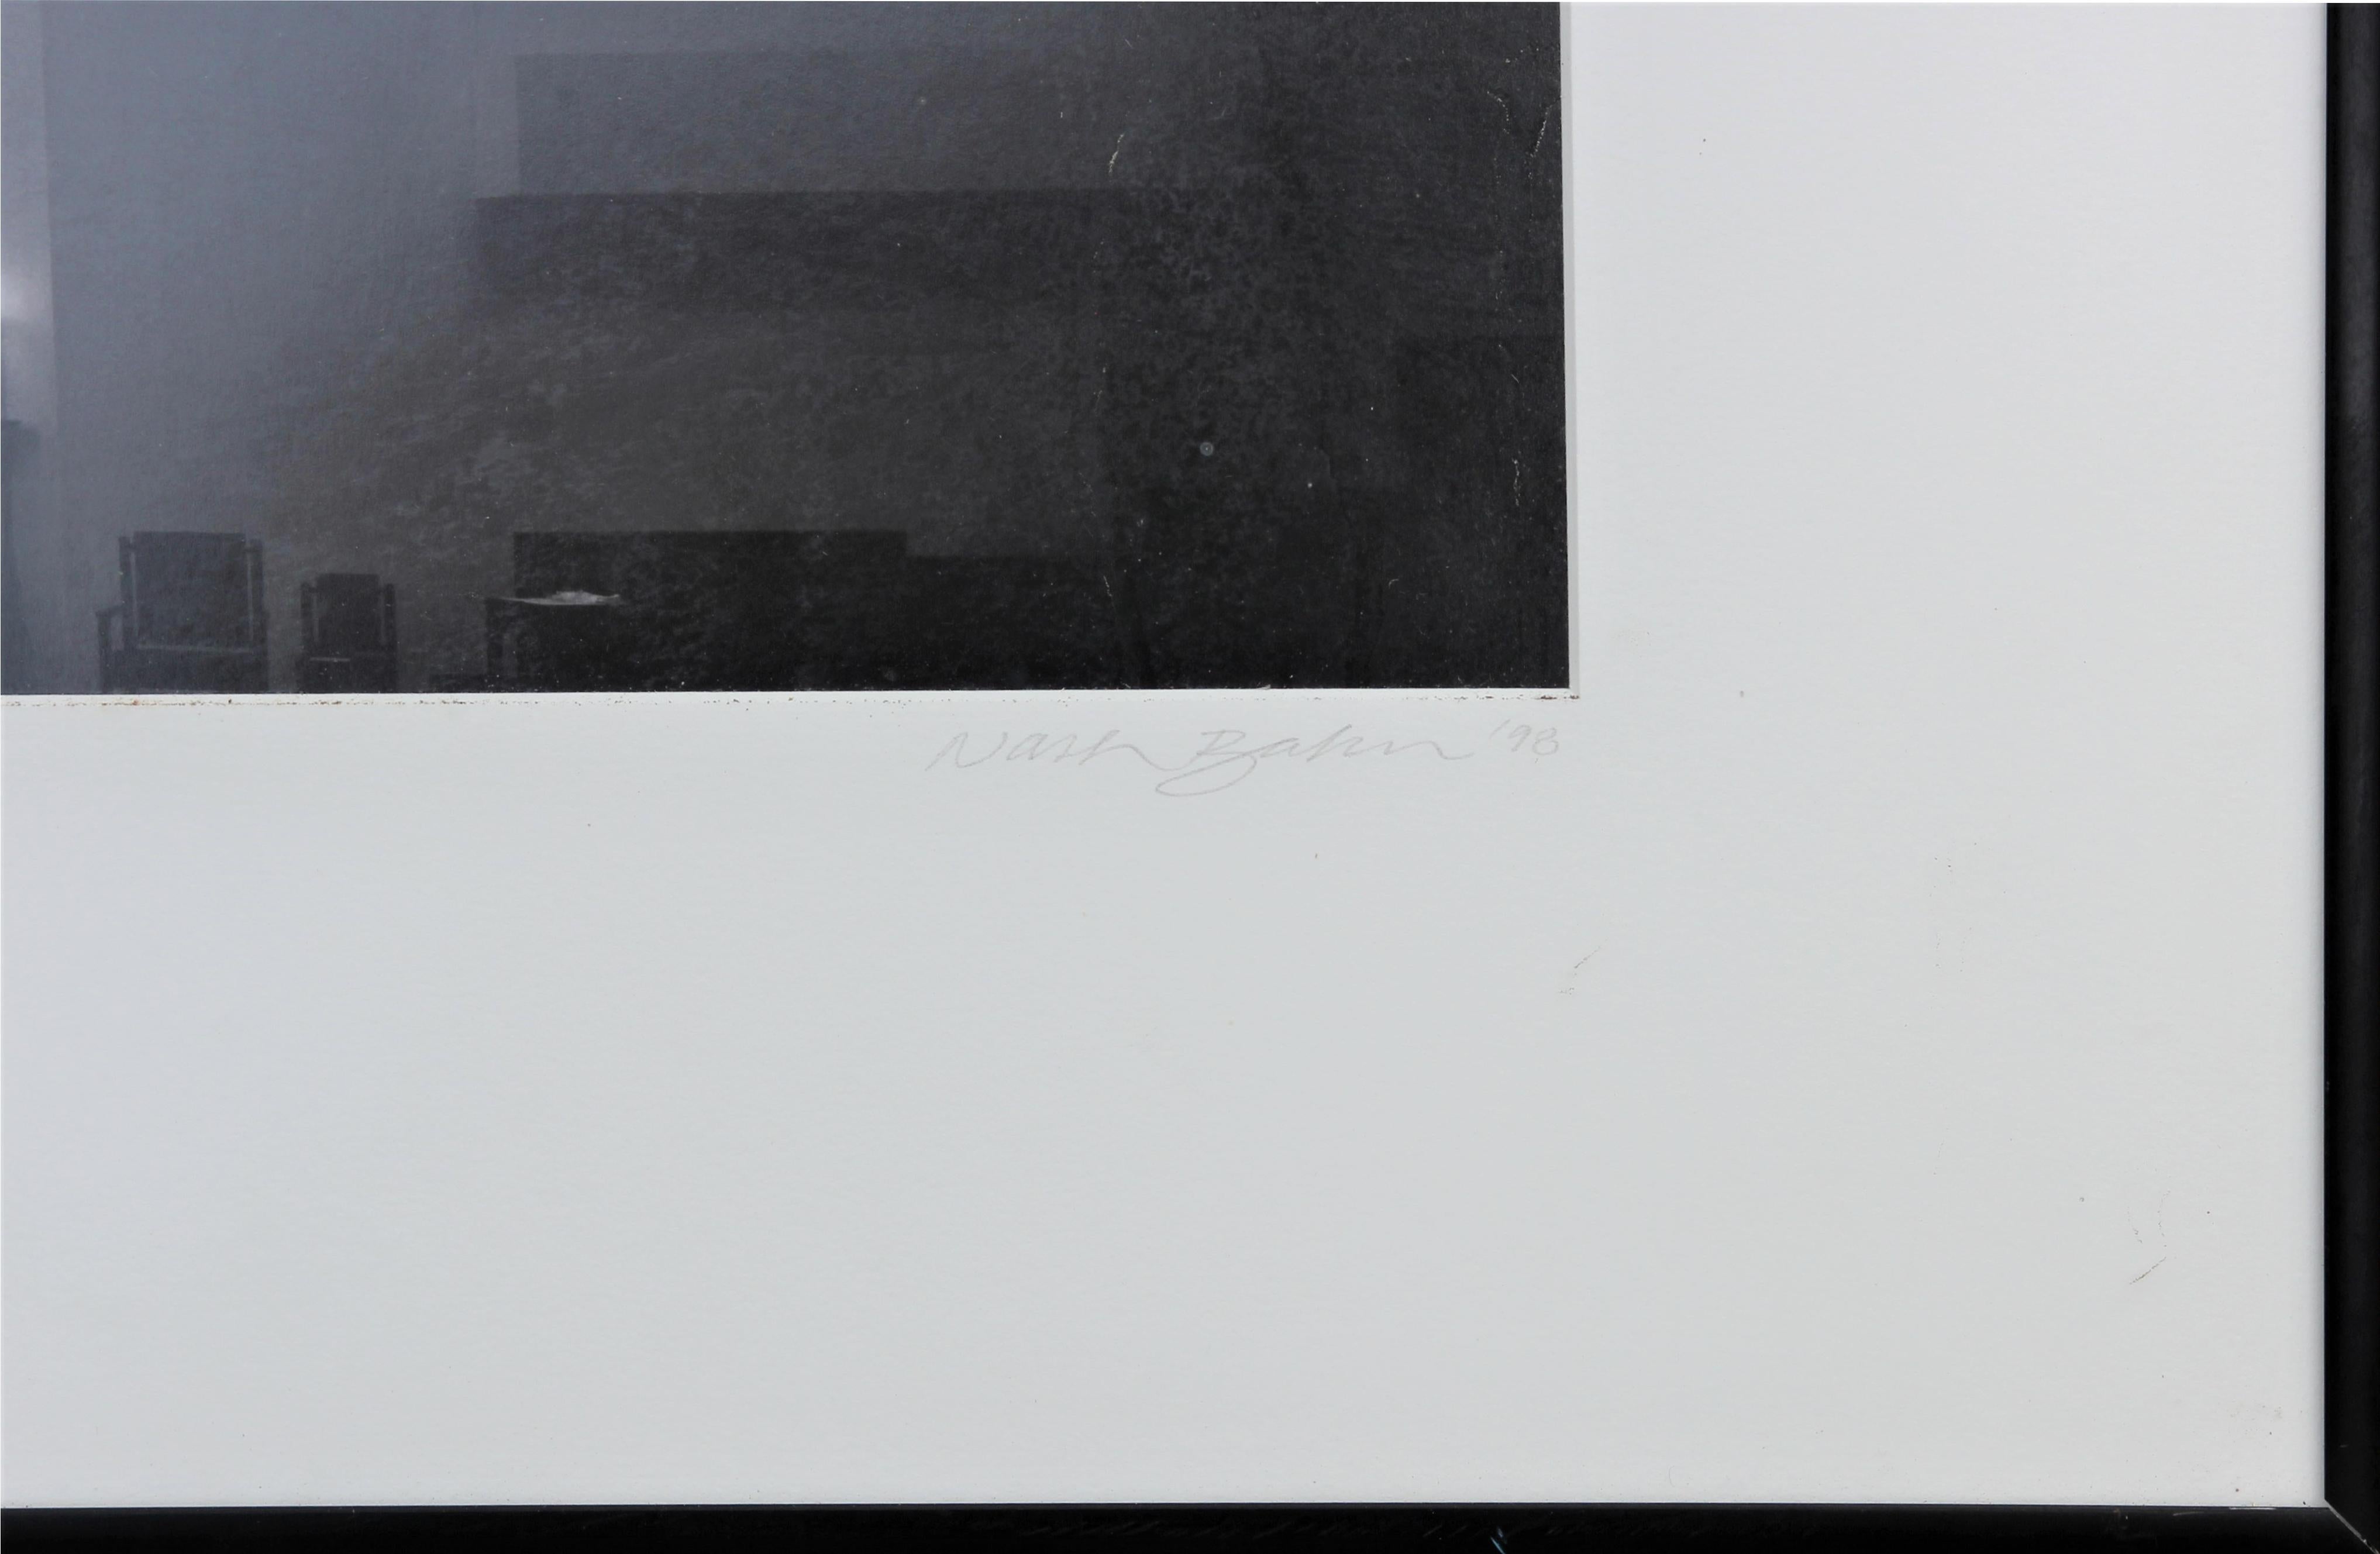 Schwarz-Weiß-Foto des Fotografen Nash Baker aus Houston, Texas, von der Basilius-Kapelle. Betitelt, signiert und datiert vom Künstler auf der Matte. Mattiert und gerahmt in schwarzem Aluminiumrahmen. 

Abmessungen ohne Rahmen: H 18,75 in. x W 14,5